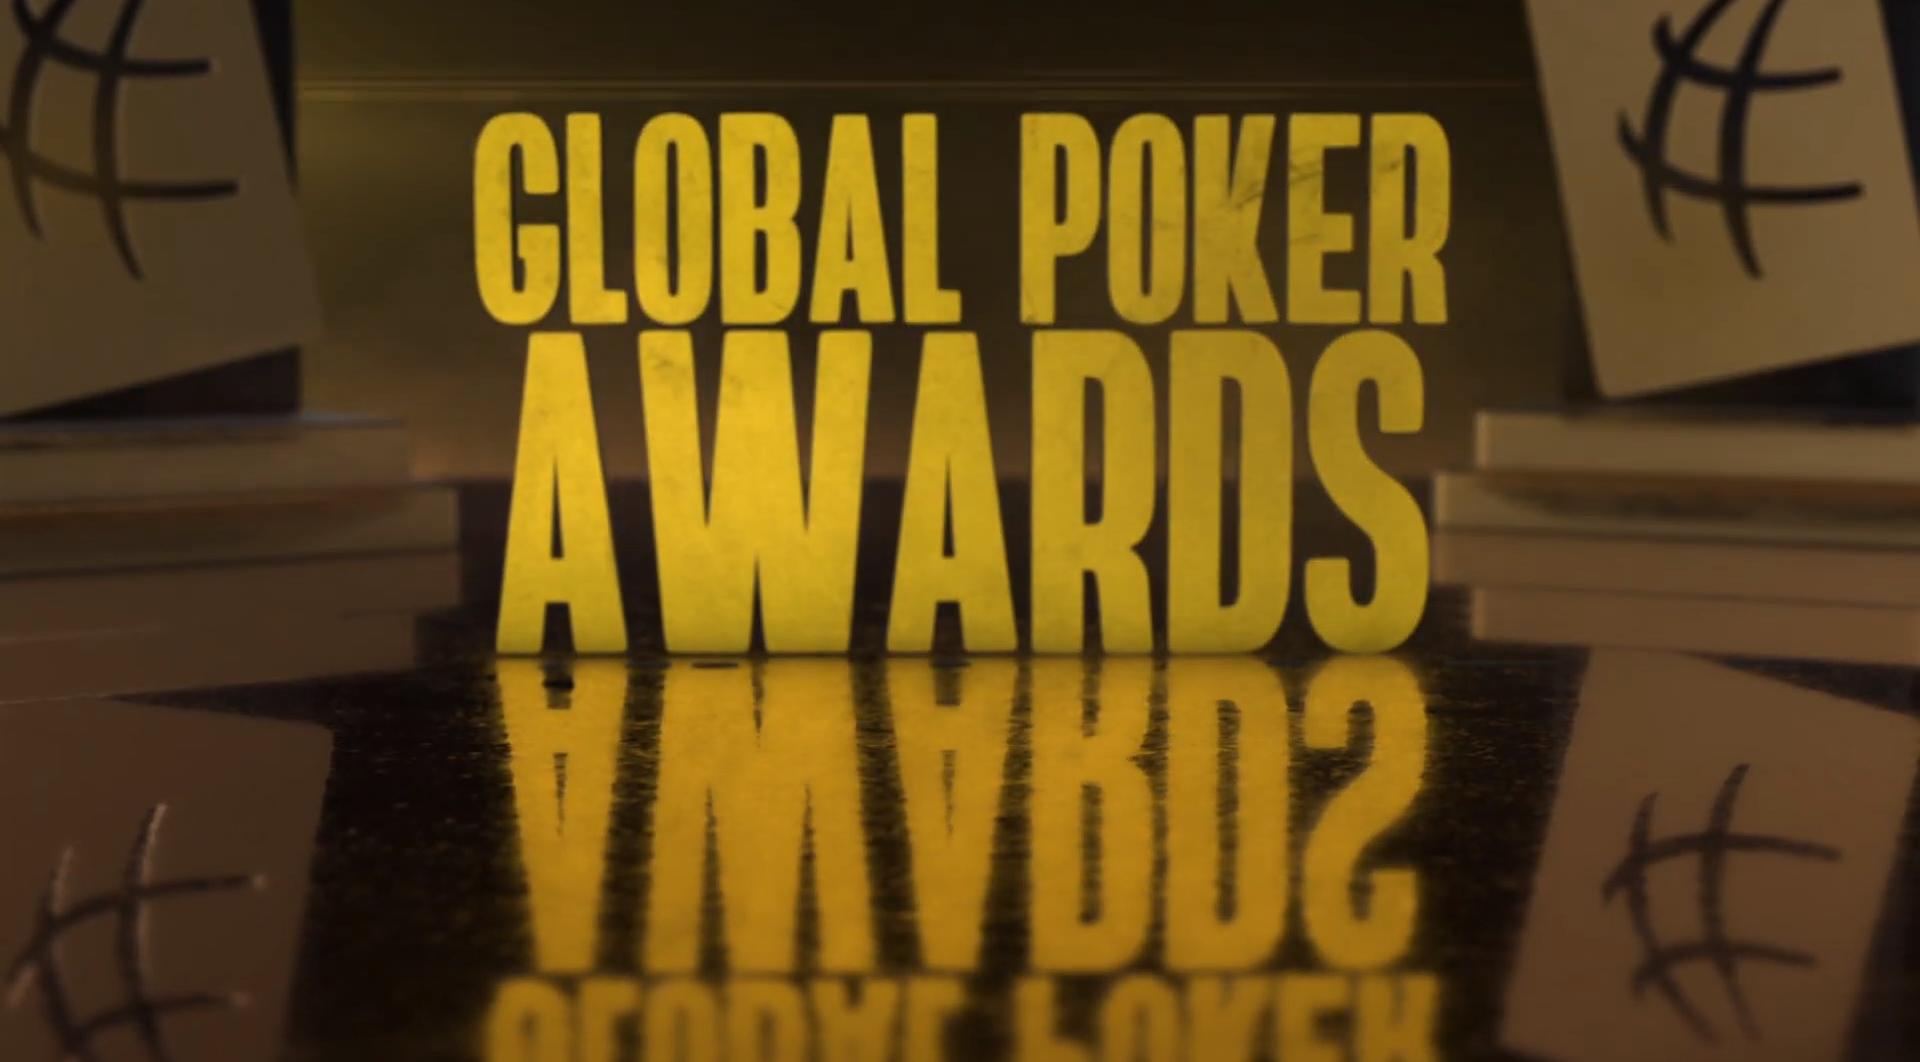 Global Poker Awards Global Poker Awards